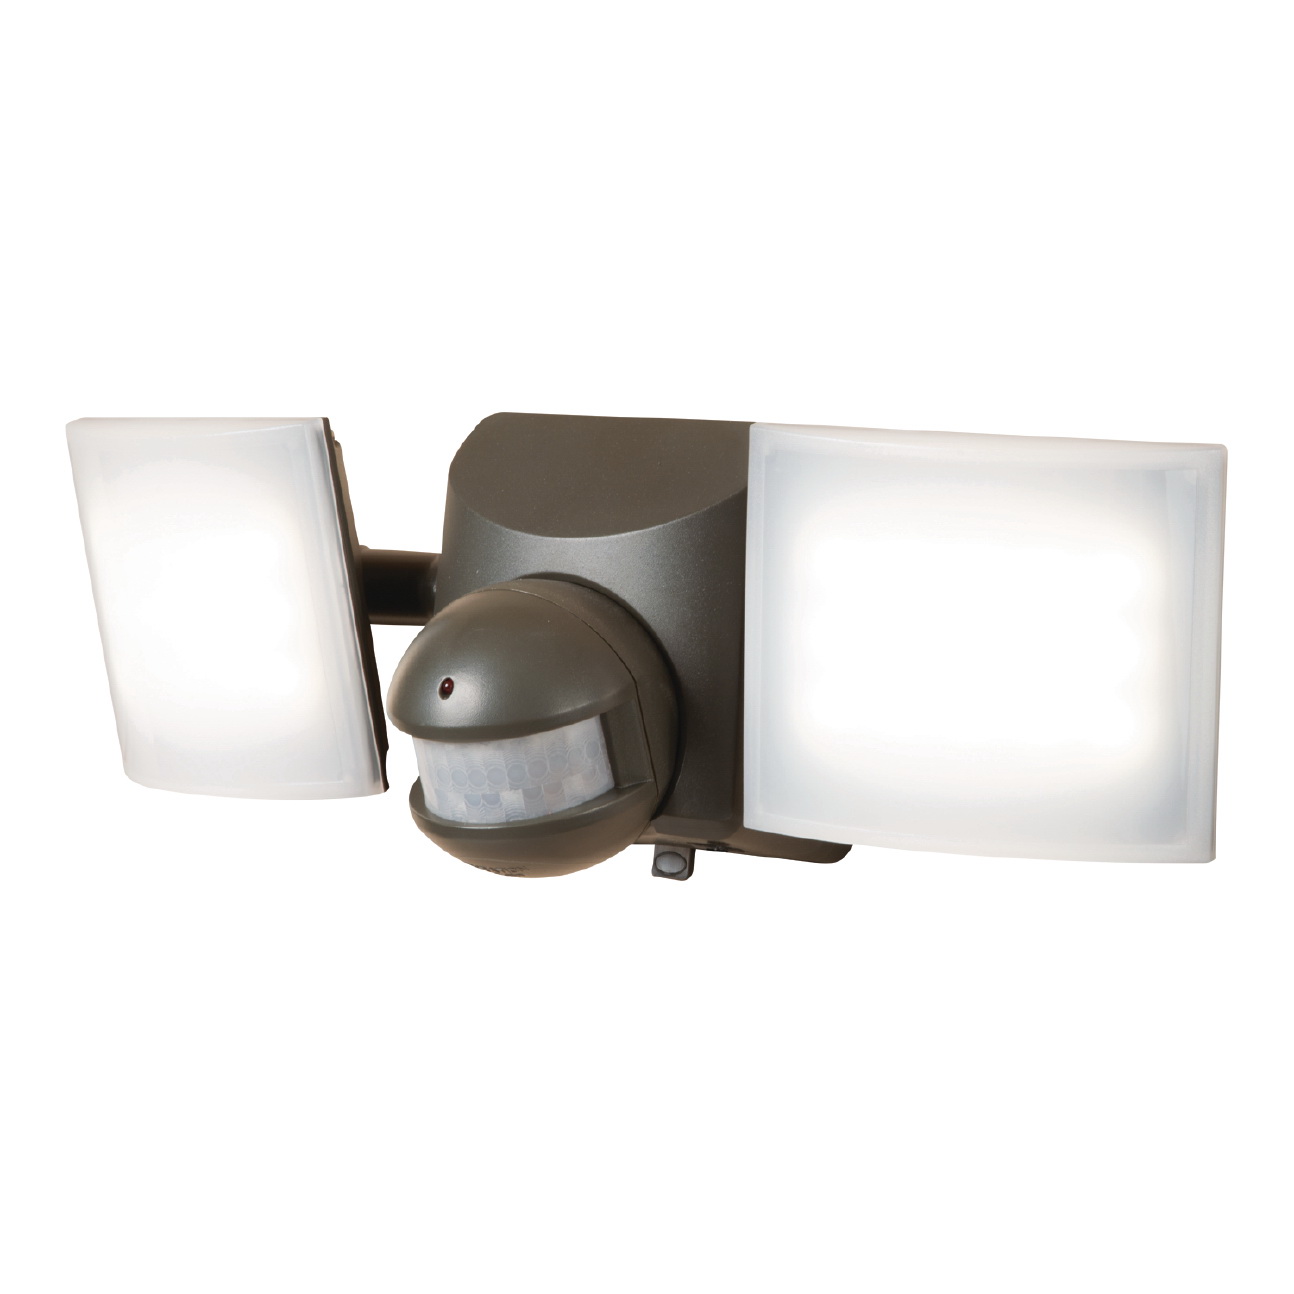 MSLED600 Solar Powered Twin Head Flood Light, 120 V, 50 W, 2-Lamp, LED Lamp, Cool White Light, 680 Lumens